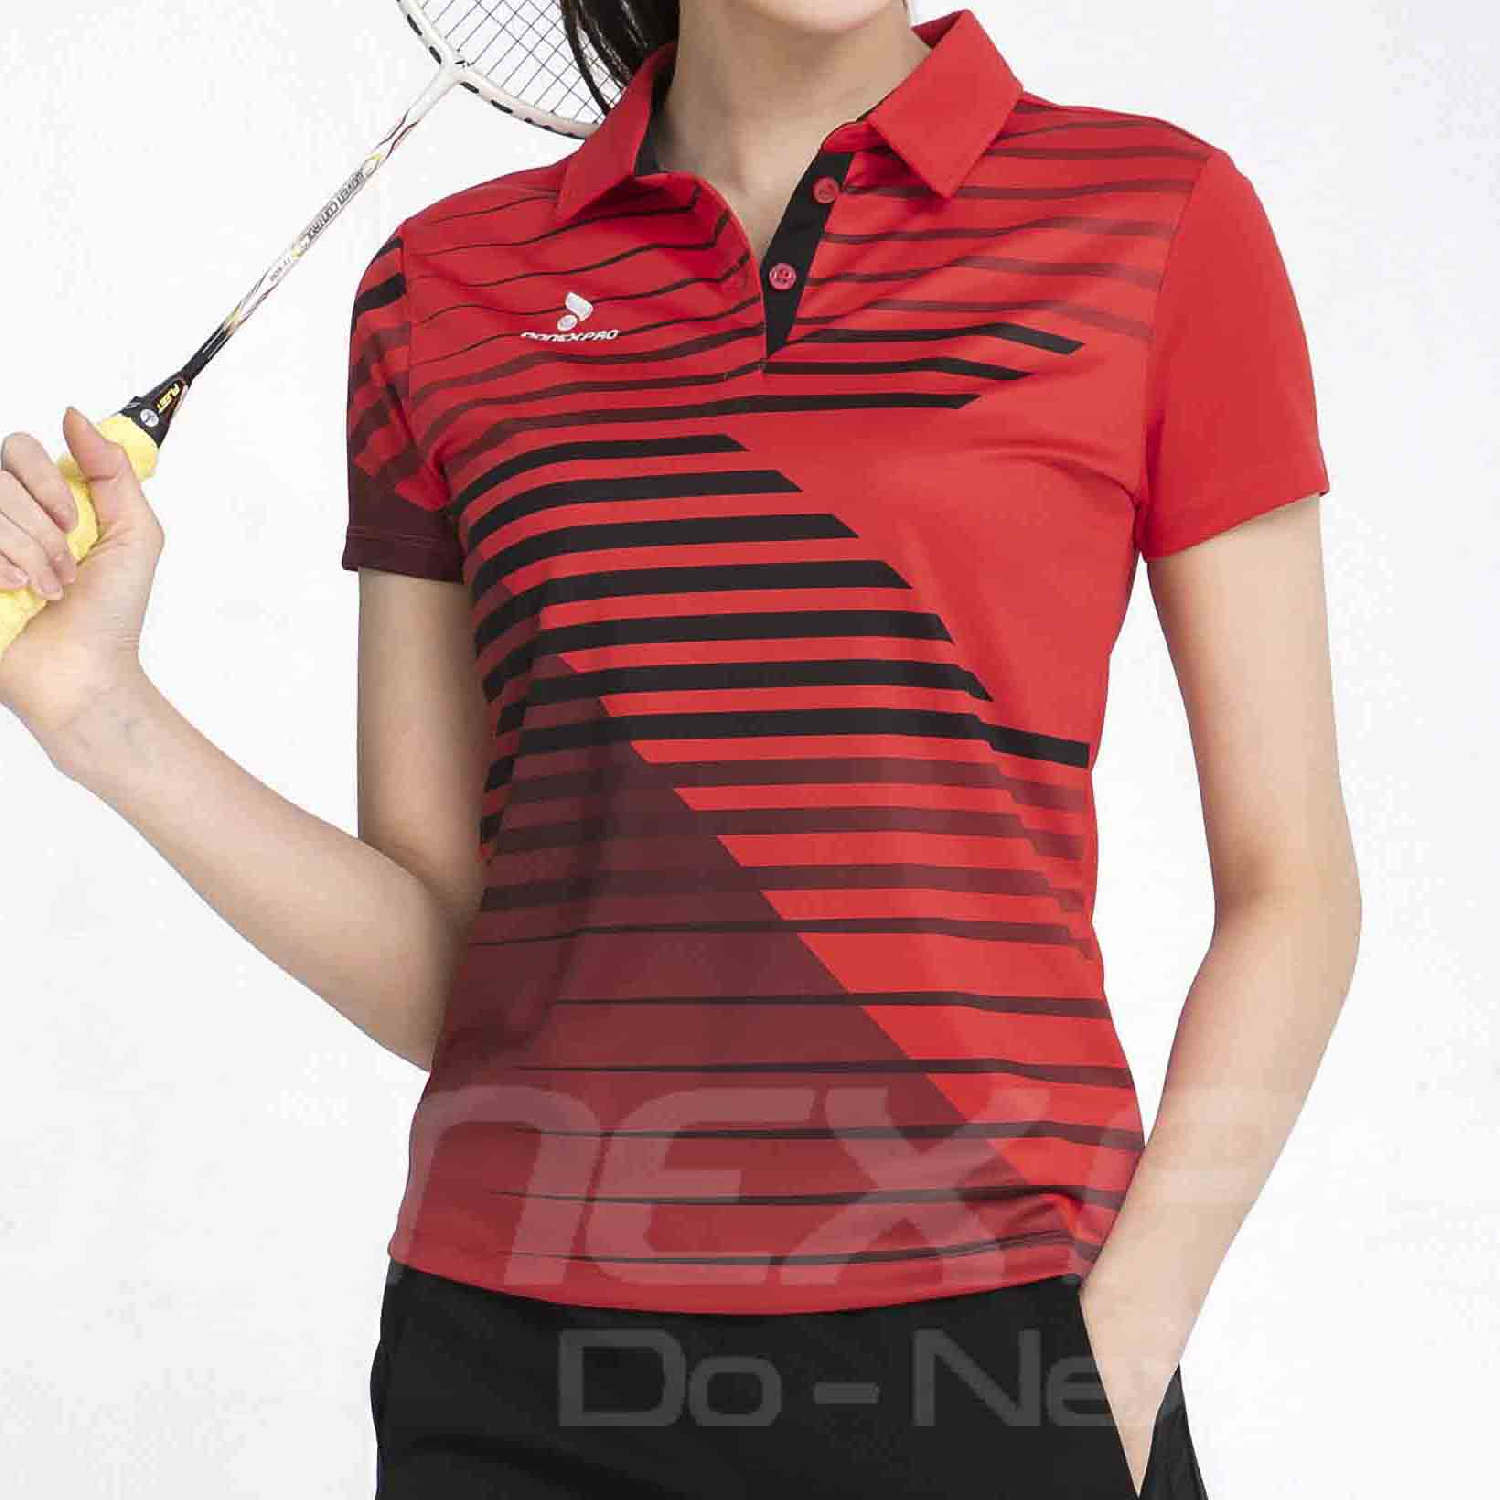 Áo cầu lông Donex Pro AC-3644 nữ đỏ phối đen chính hãng